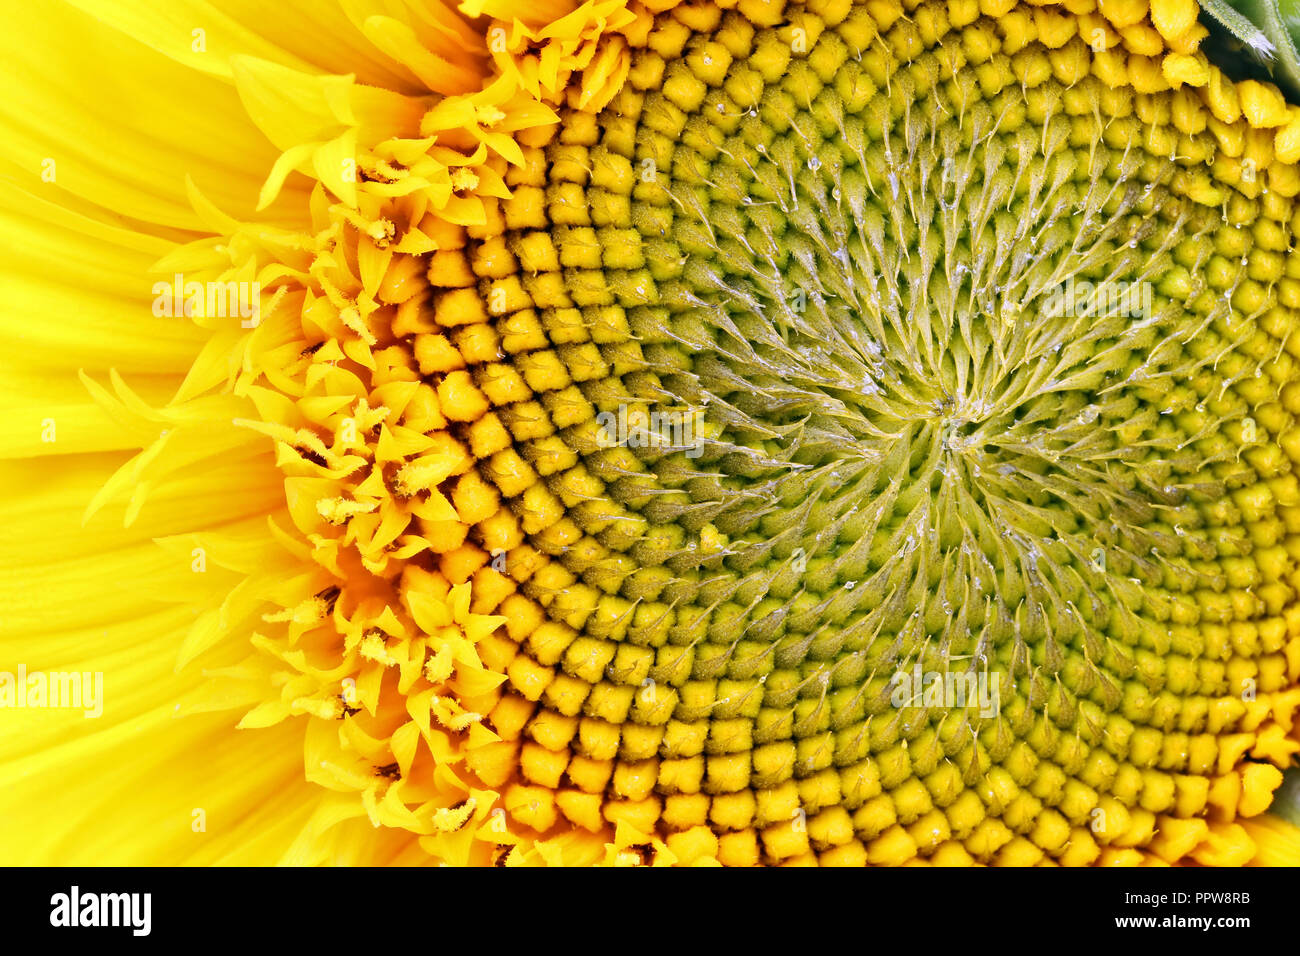 Sonnenblume bud am Anfang von Saatgut Reifung - Ansicht von oben auf die Blume. Kleine Tröpfchen von Harz und Öl auf die Blütenblätter. Studio Makro Hintergrund Stockfoto